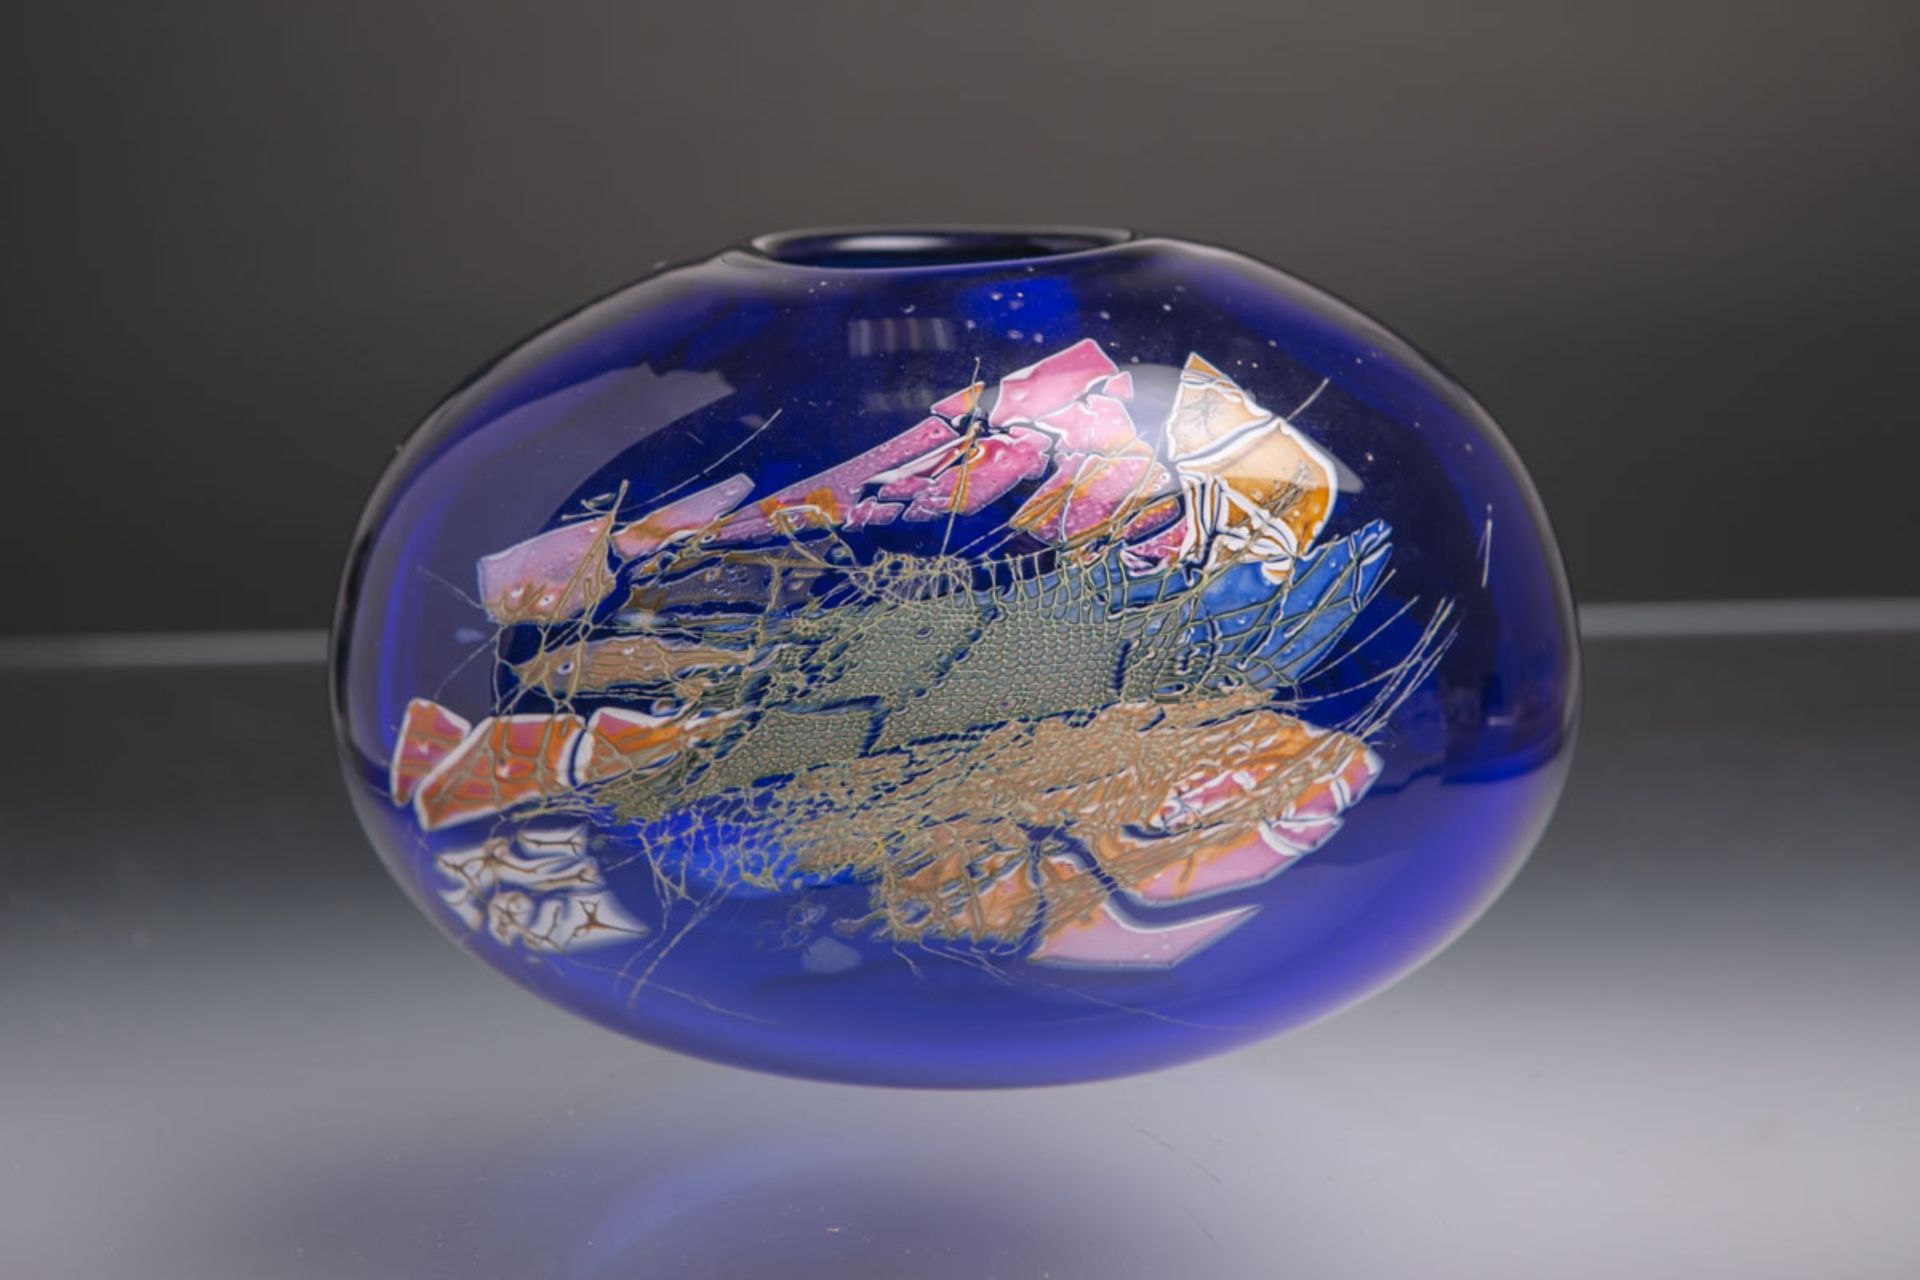 Glasstudiovase (1994), blaues Glas m. abstrakter Darstellung, bauchige seitlich abgeflachte Form,